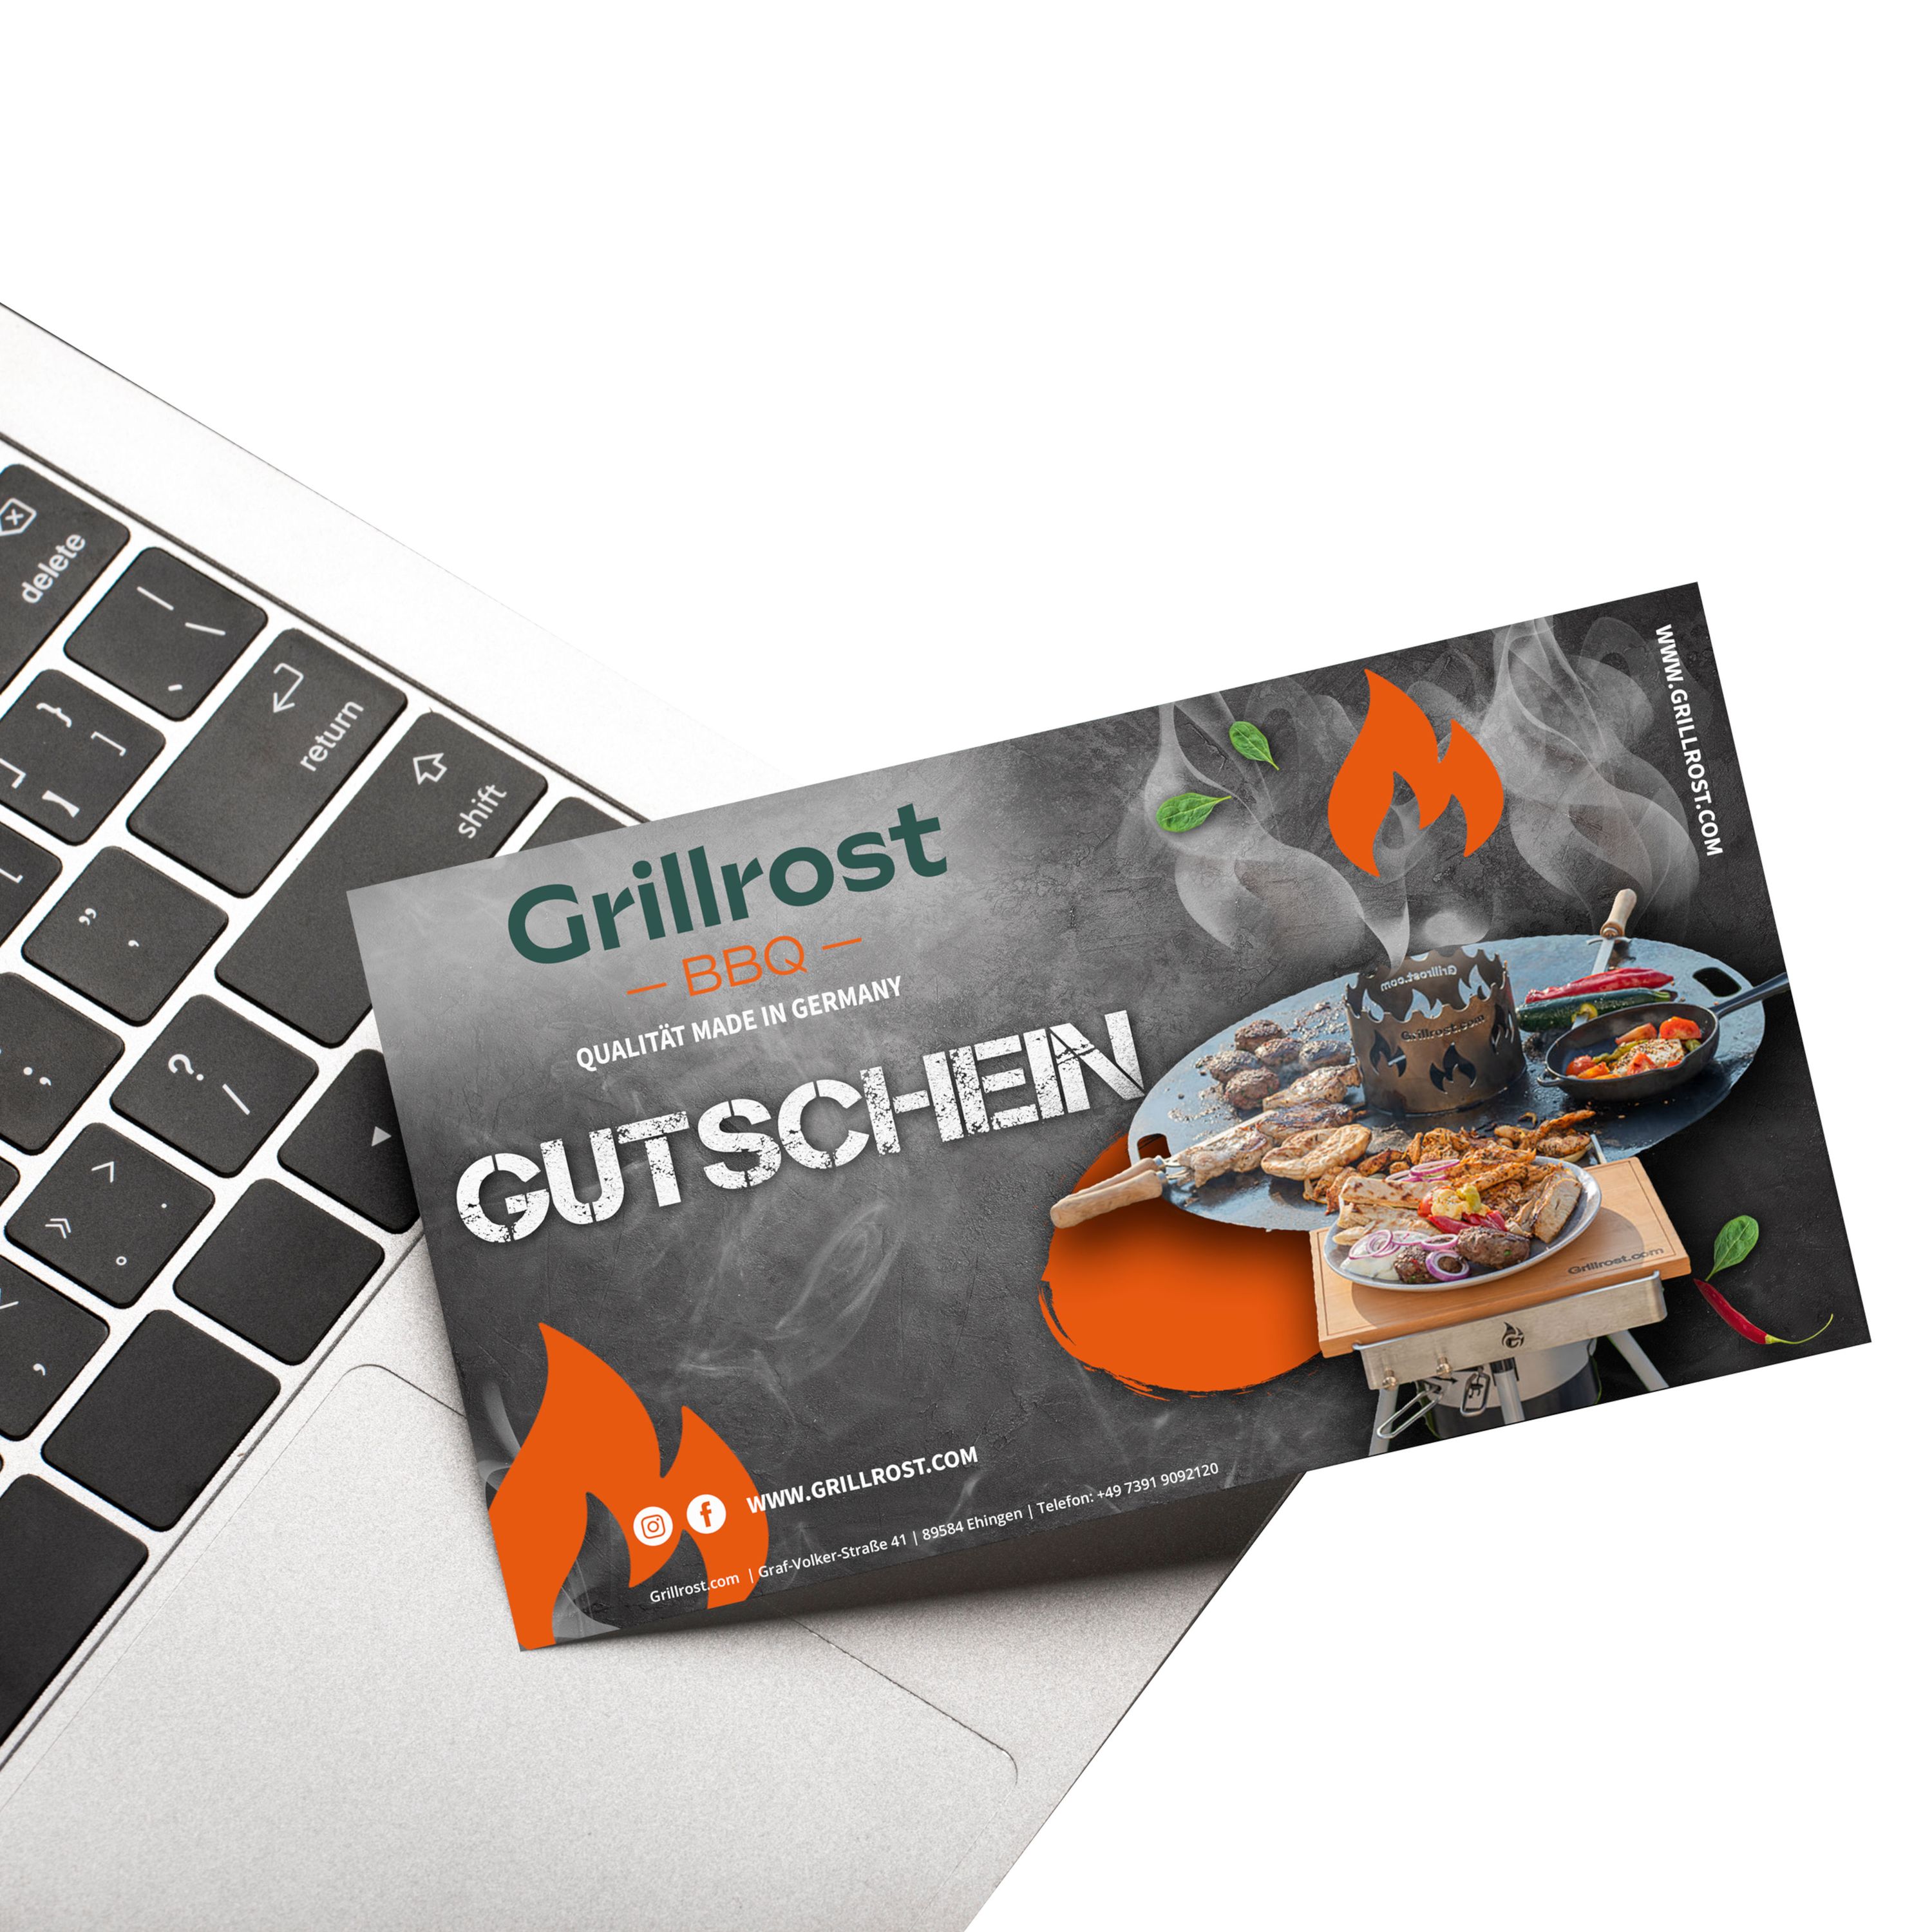 Bon d'achat pour Grillrost.com en PDF directement imprimable